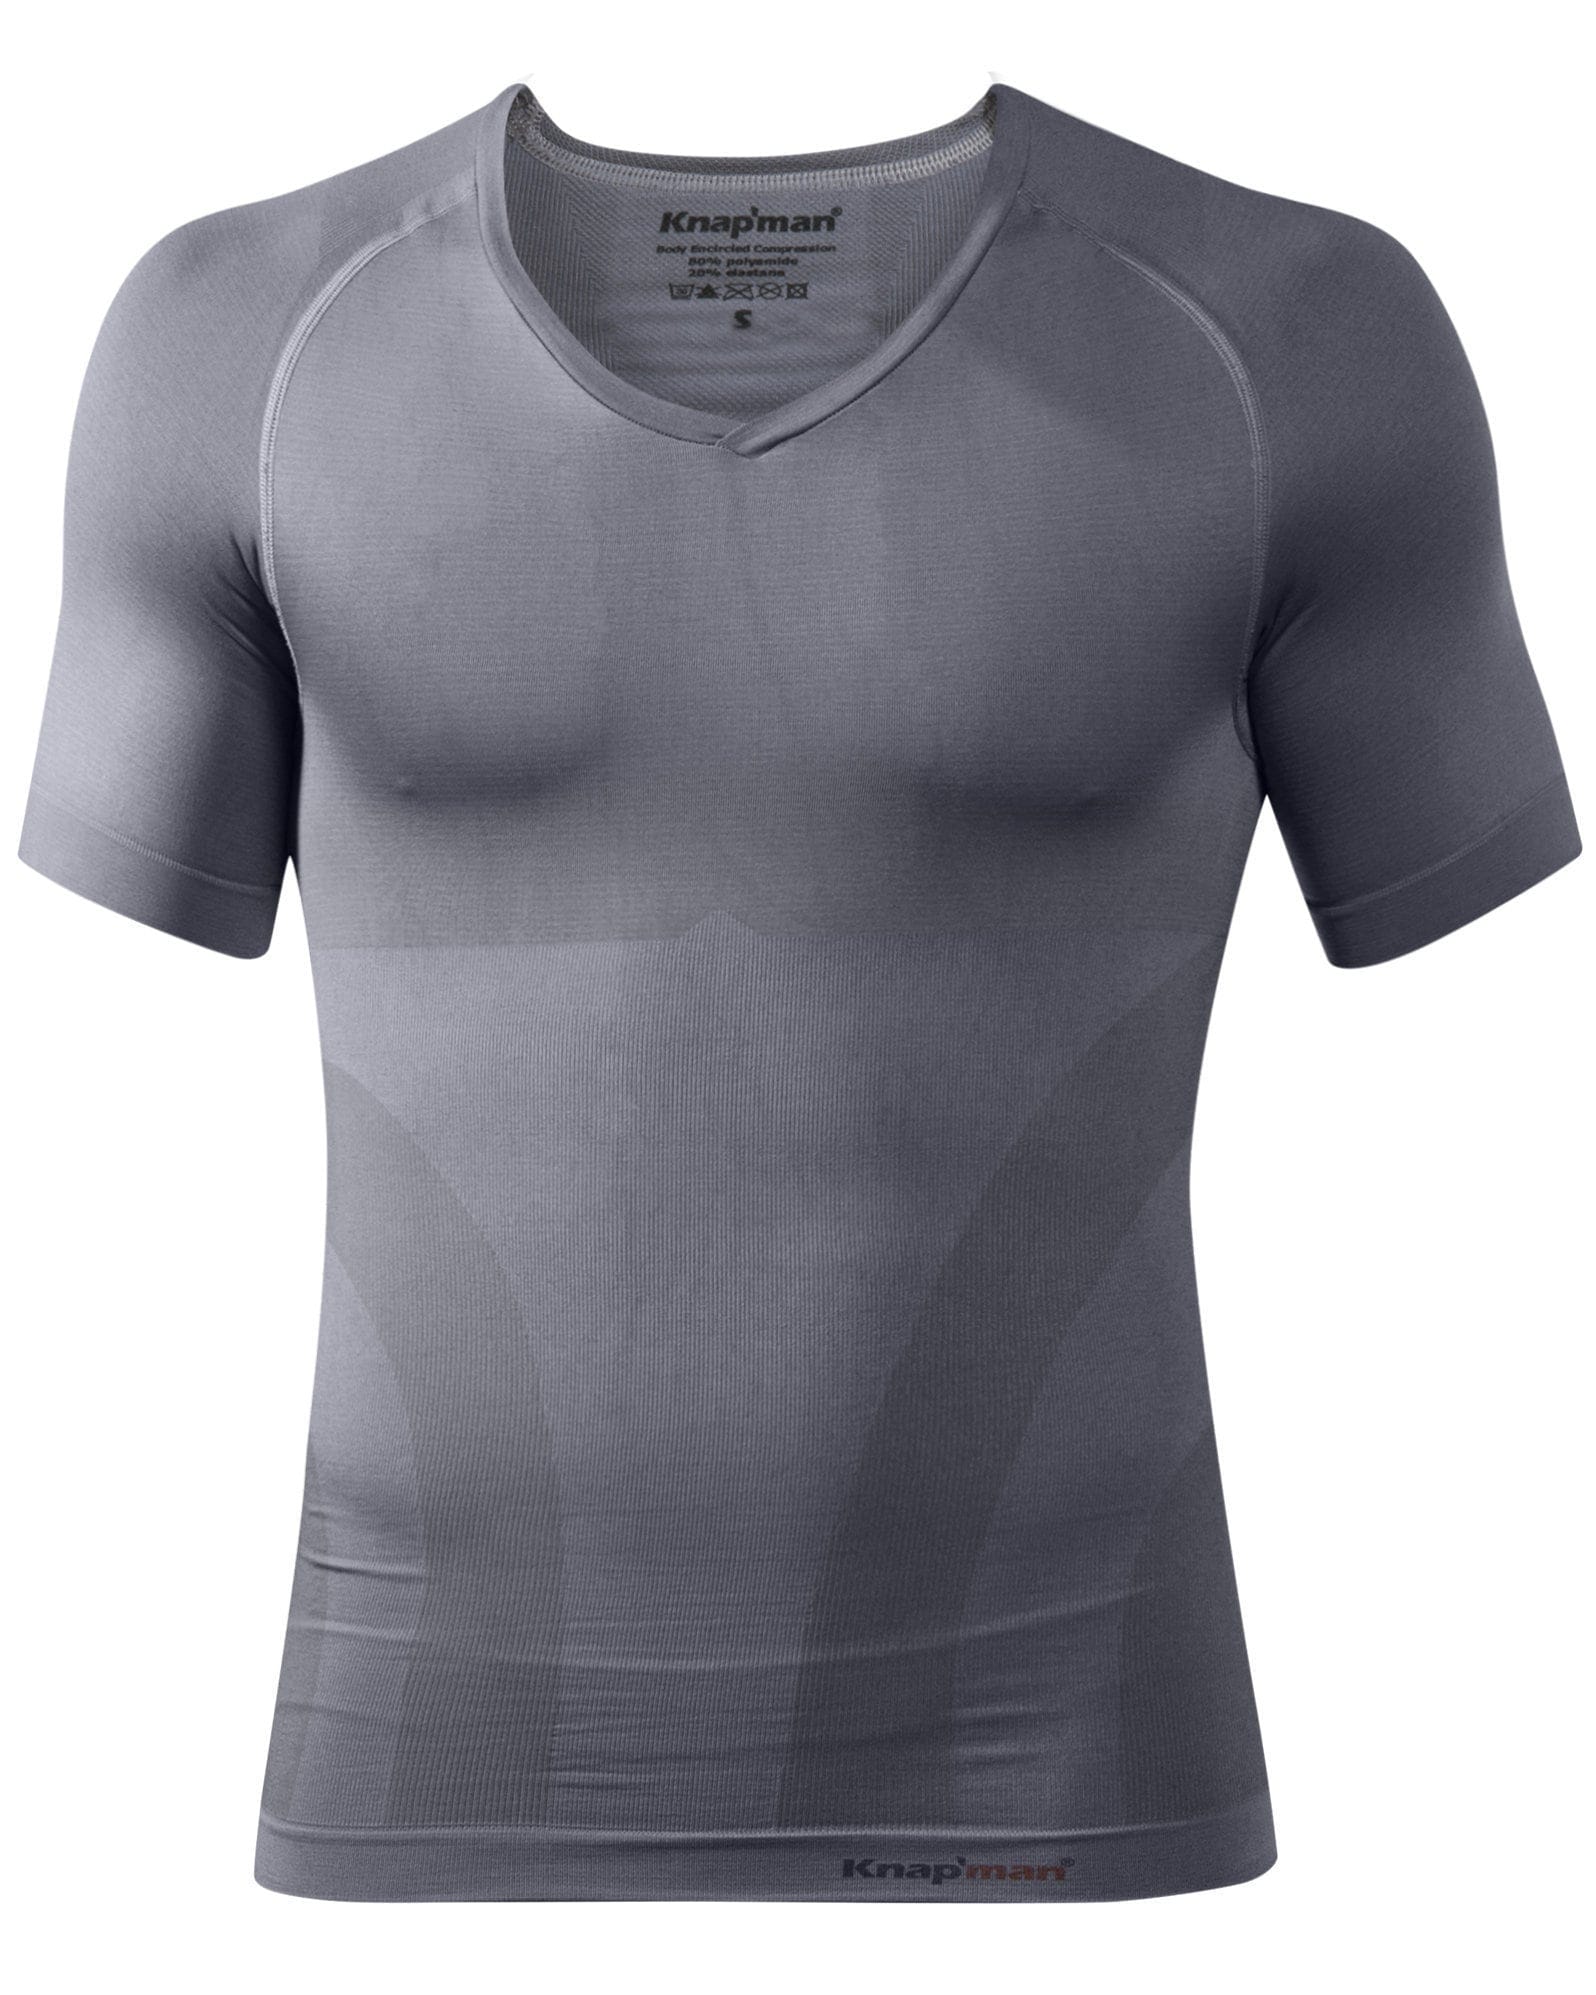 Compression Shirt V-Neck Gray